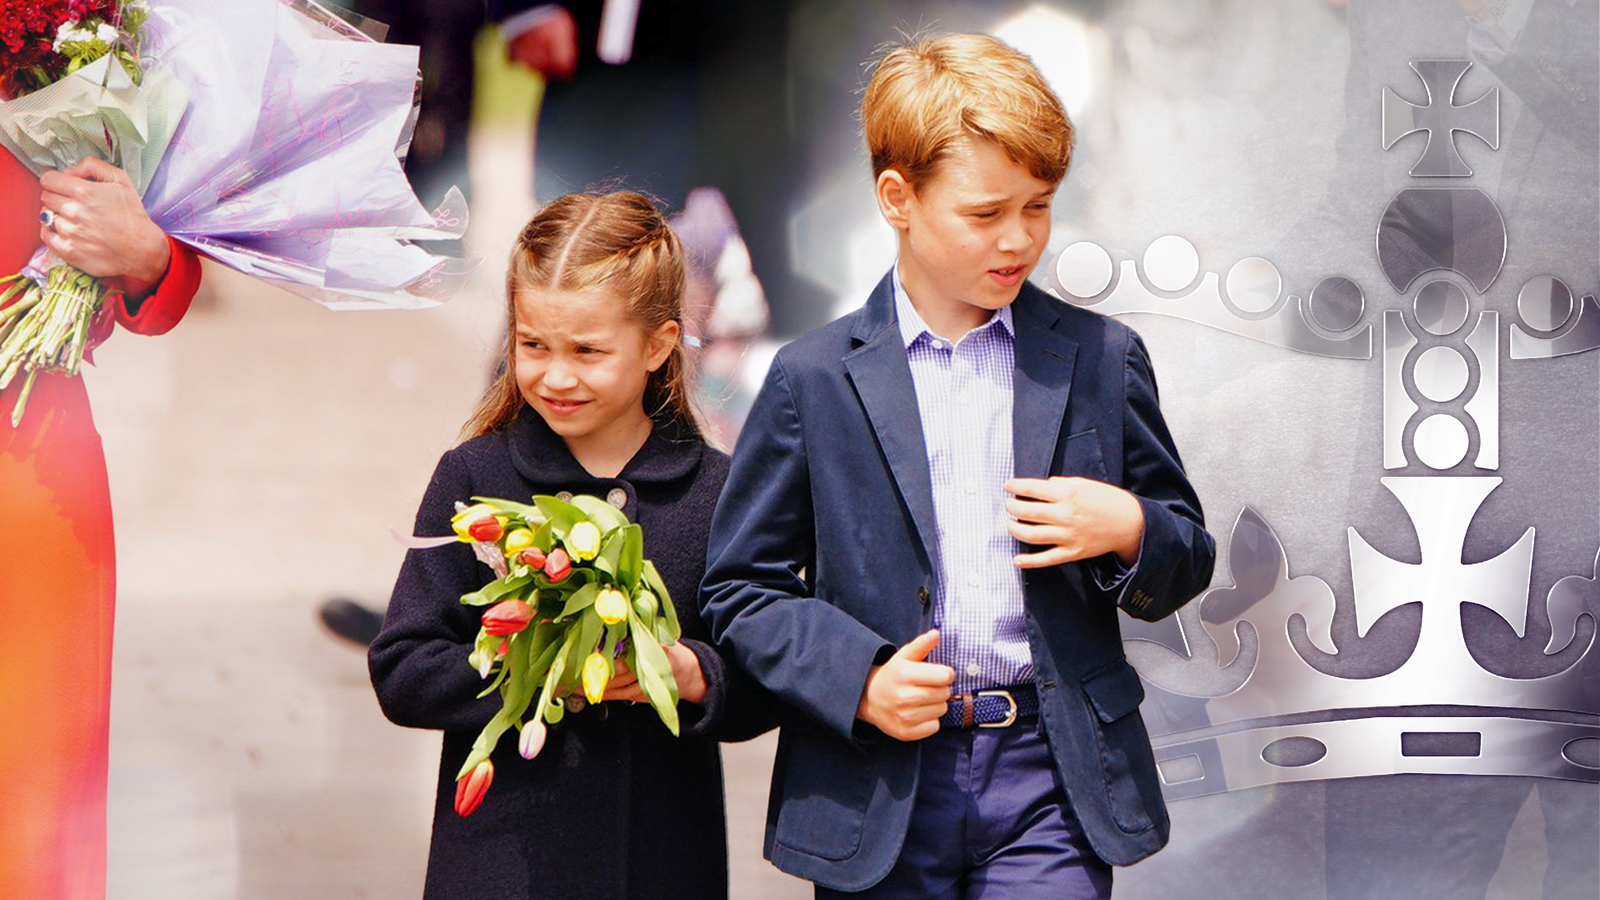 الأمير جورج والأميرة شارلوت يسعدان الجماهير بزيارة مفاجئة إلى كارديف بمناسبة اليوبيل |  أخبار المملكة المتحدة